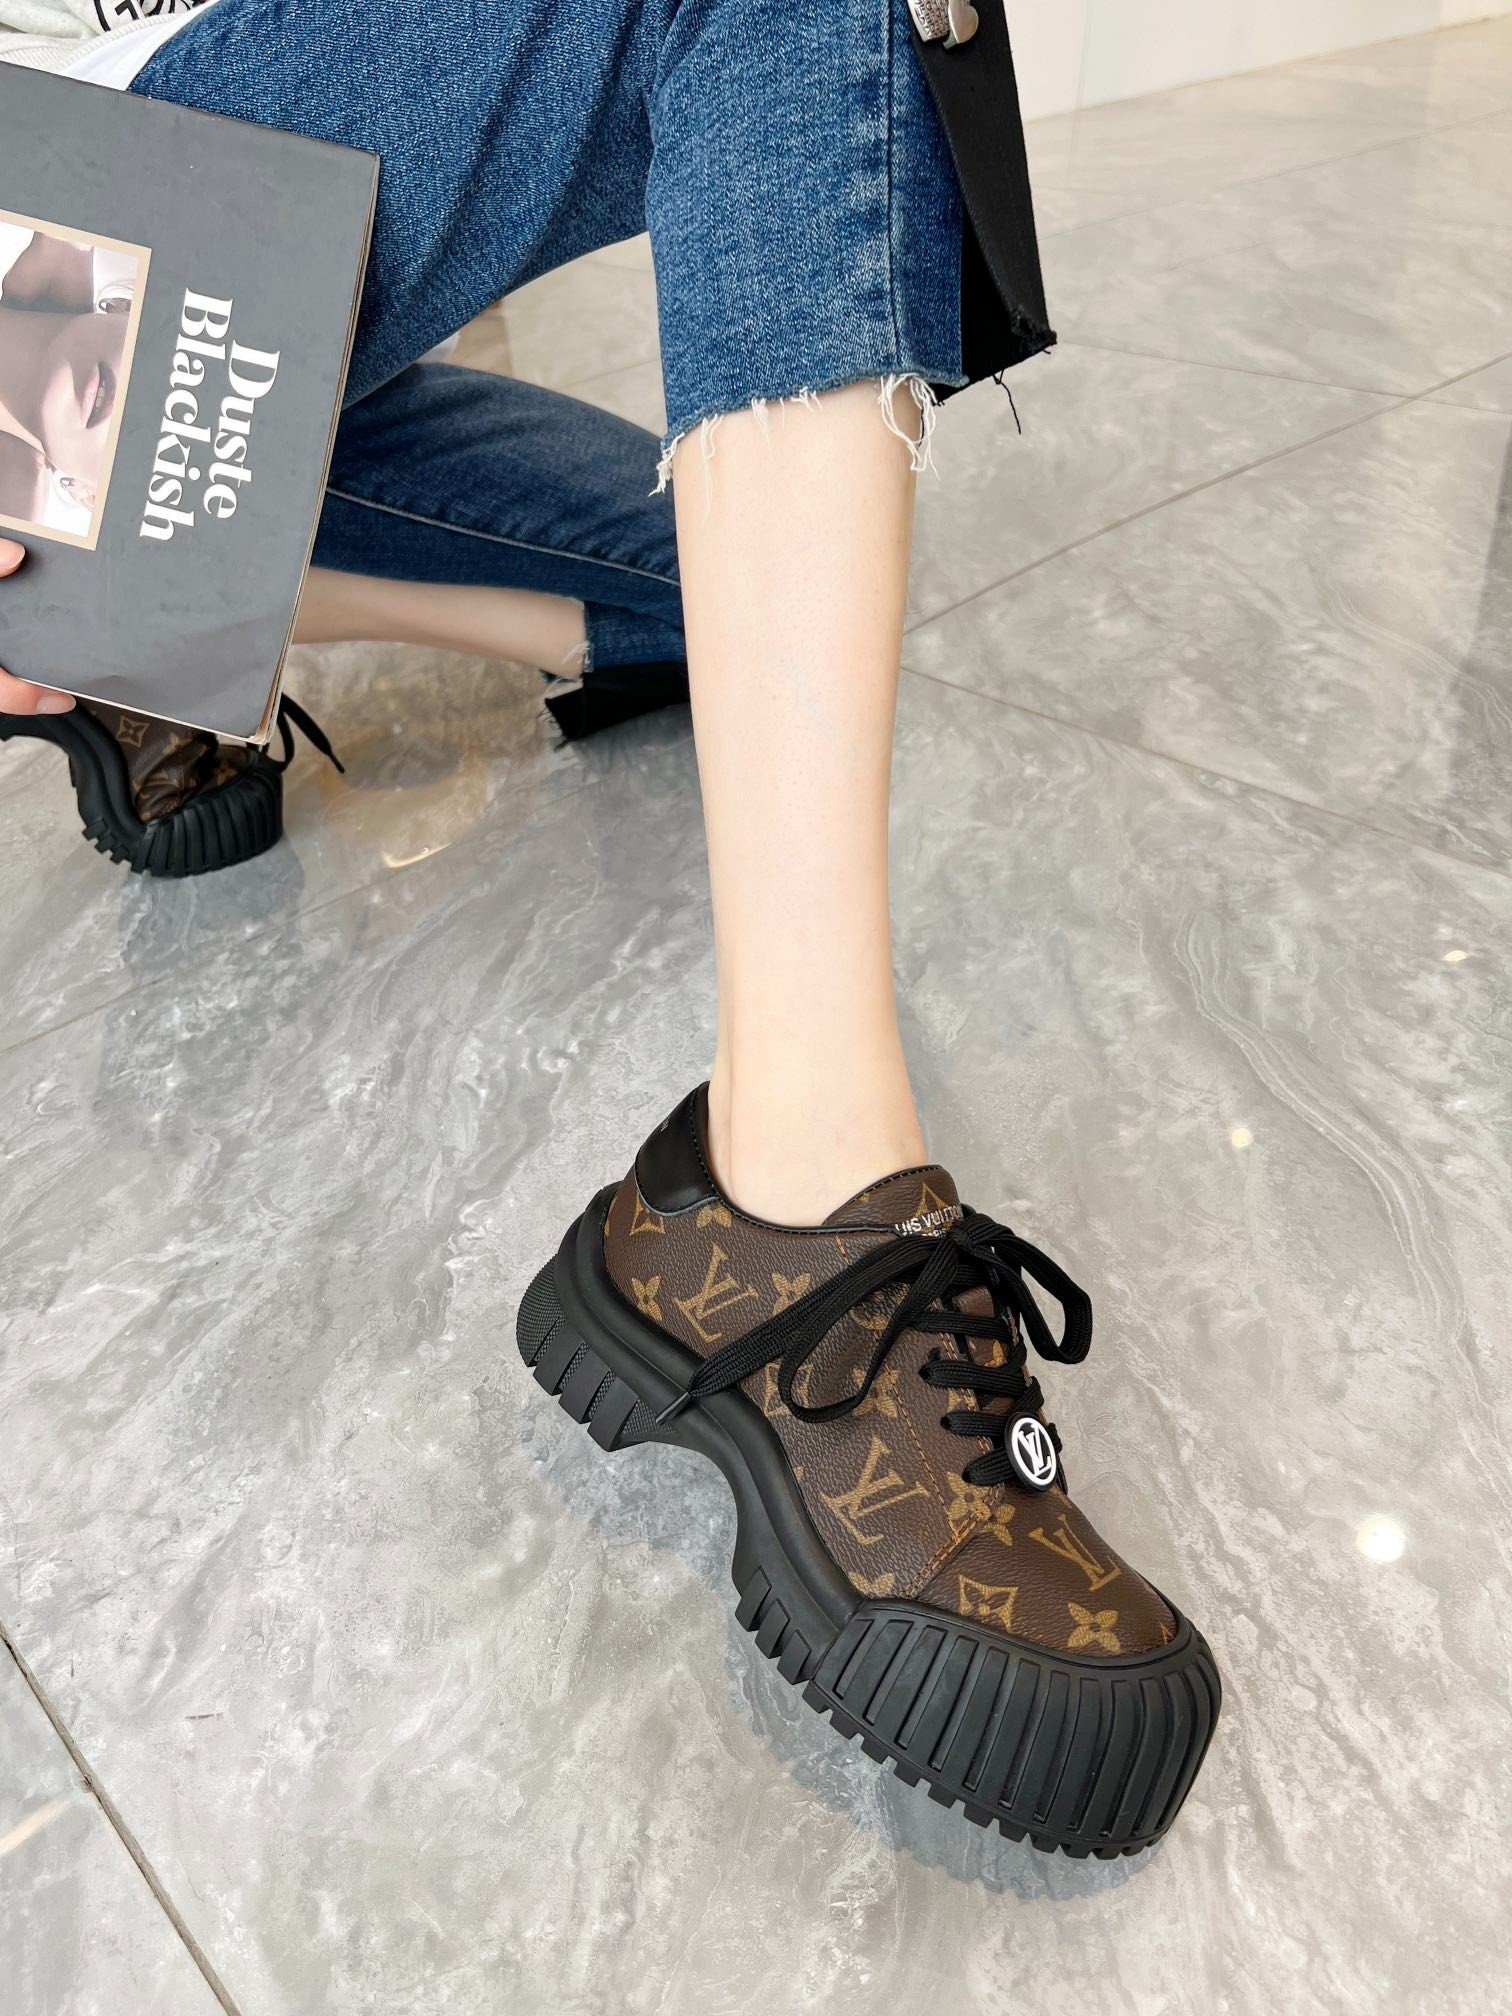 Giày Louis Vuitton Catwalk Siêu Cấp Màu Nâu Size 35-40